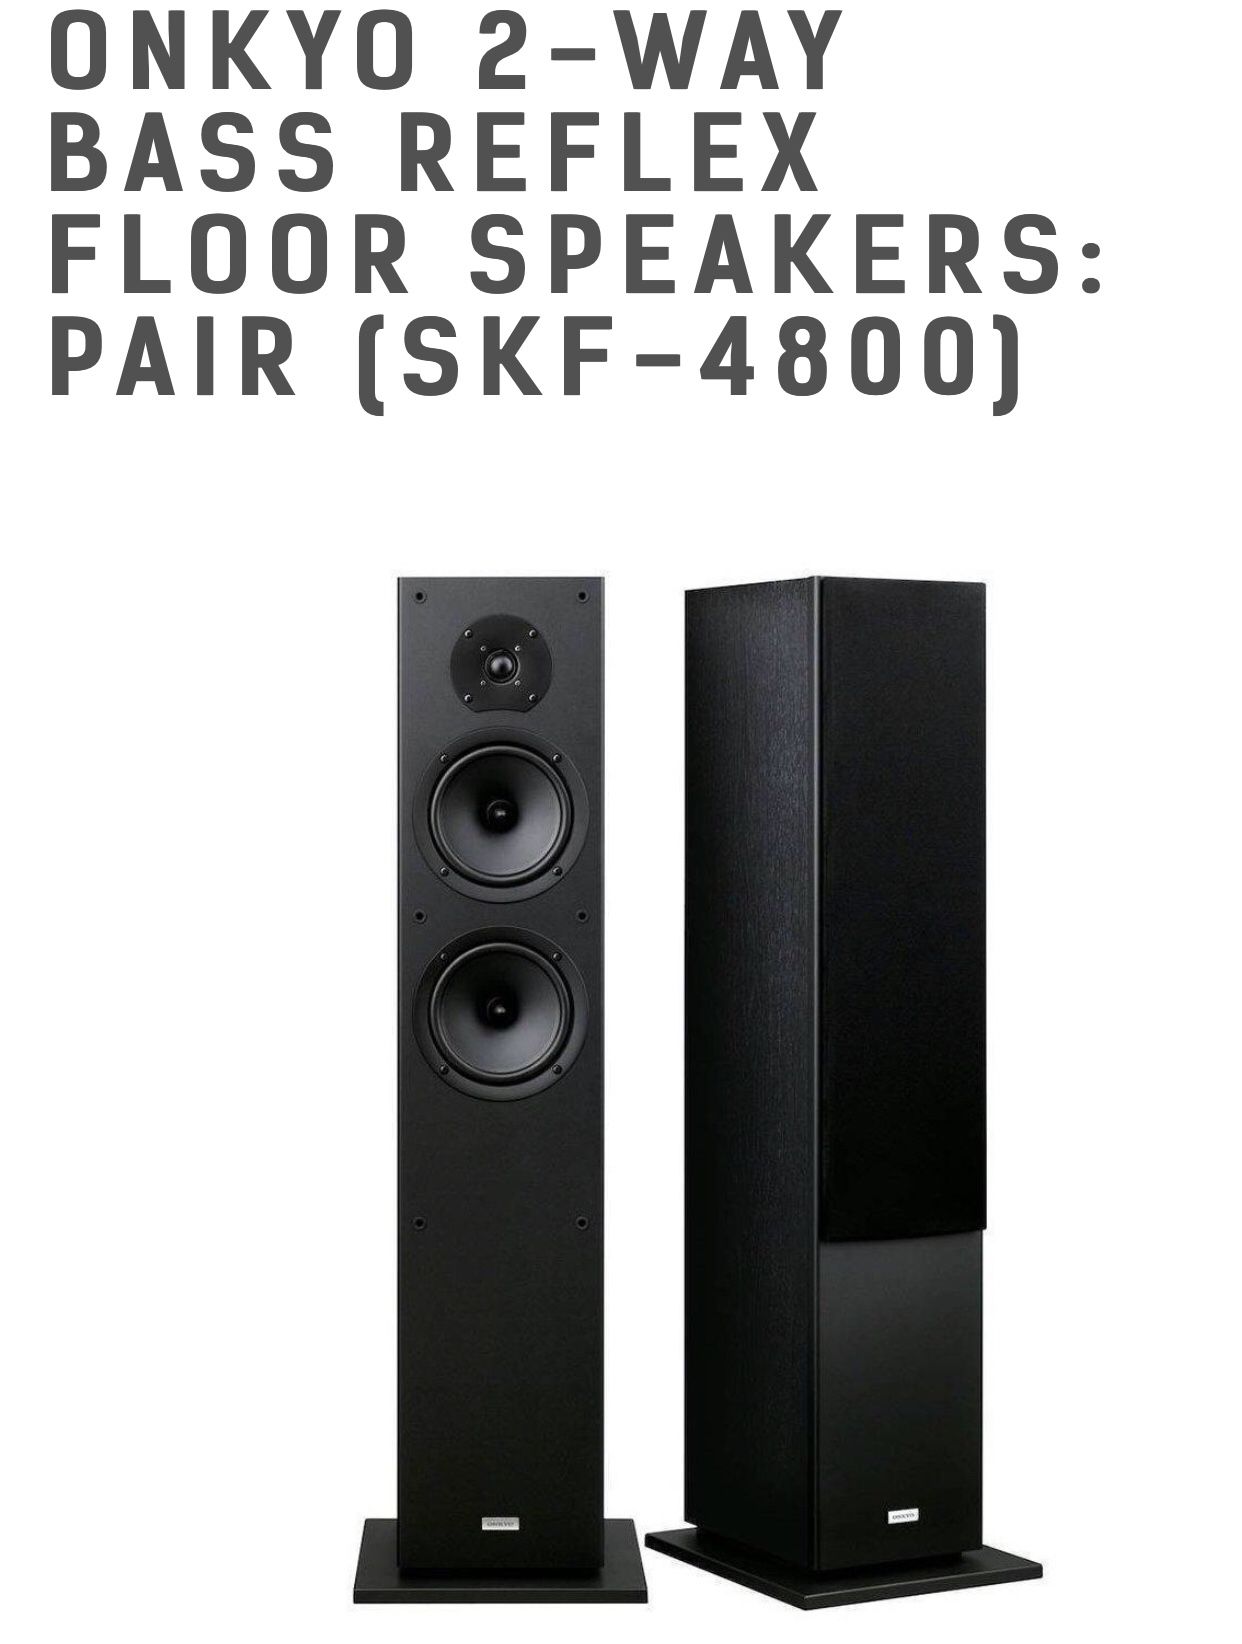 Onkyo Pair of Floor Speakers